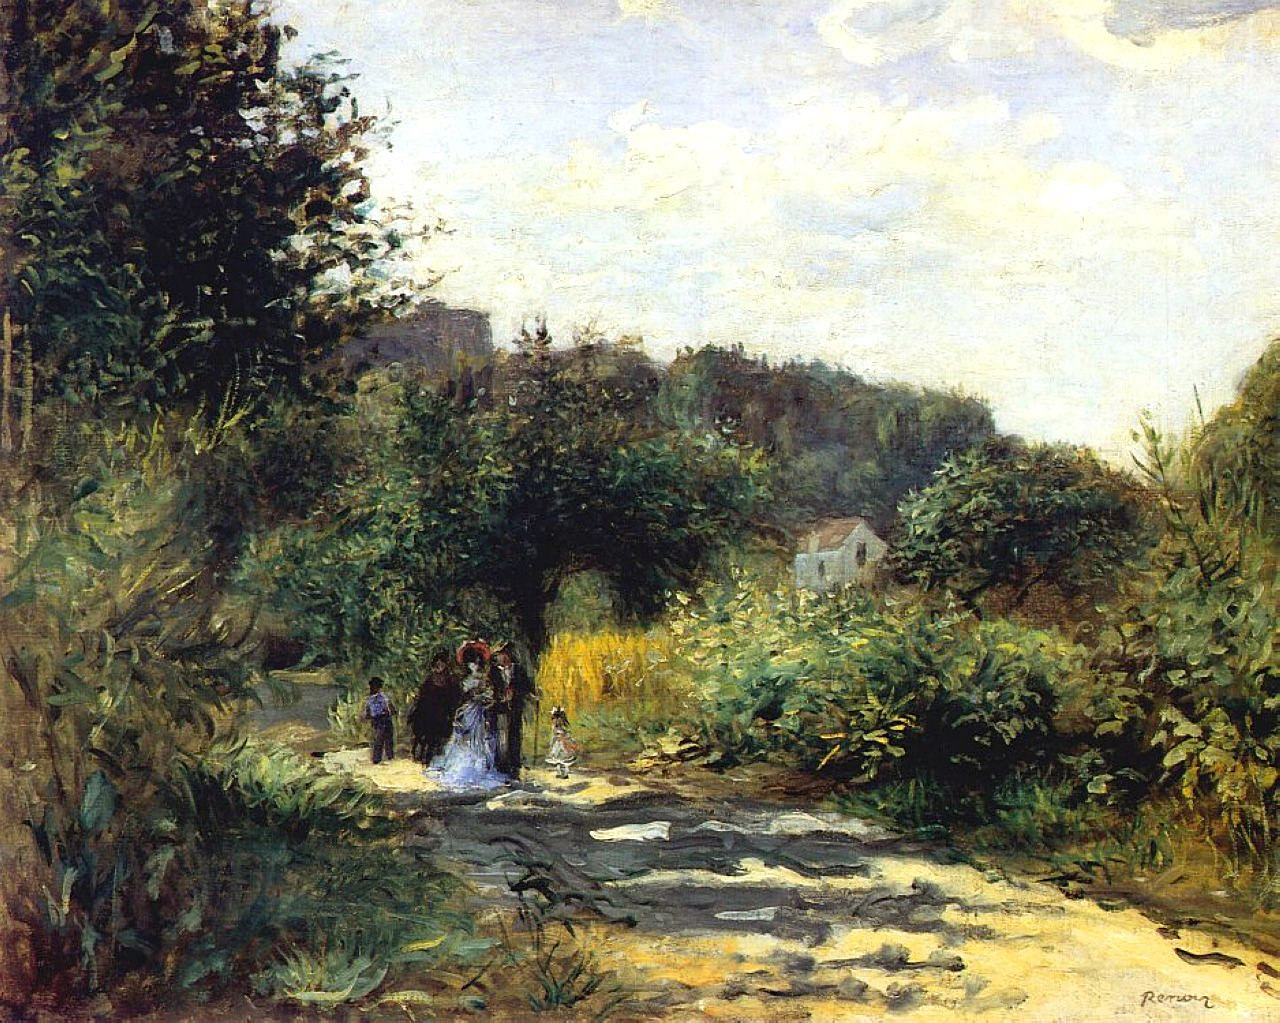 Pierre+Auguste+Renoir-1841-1-19 (409).jpg